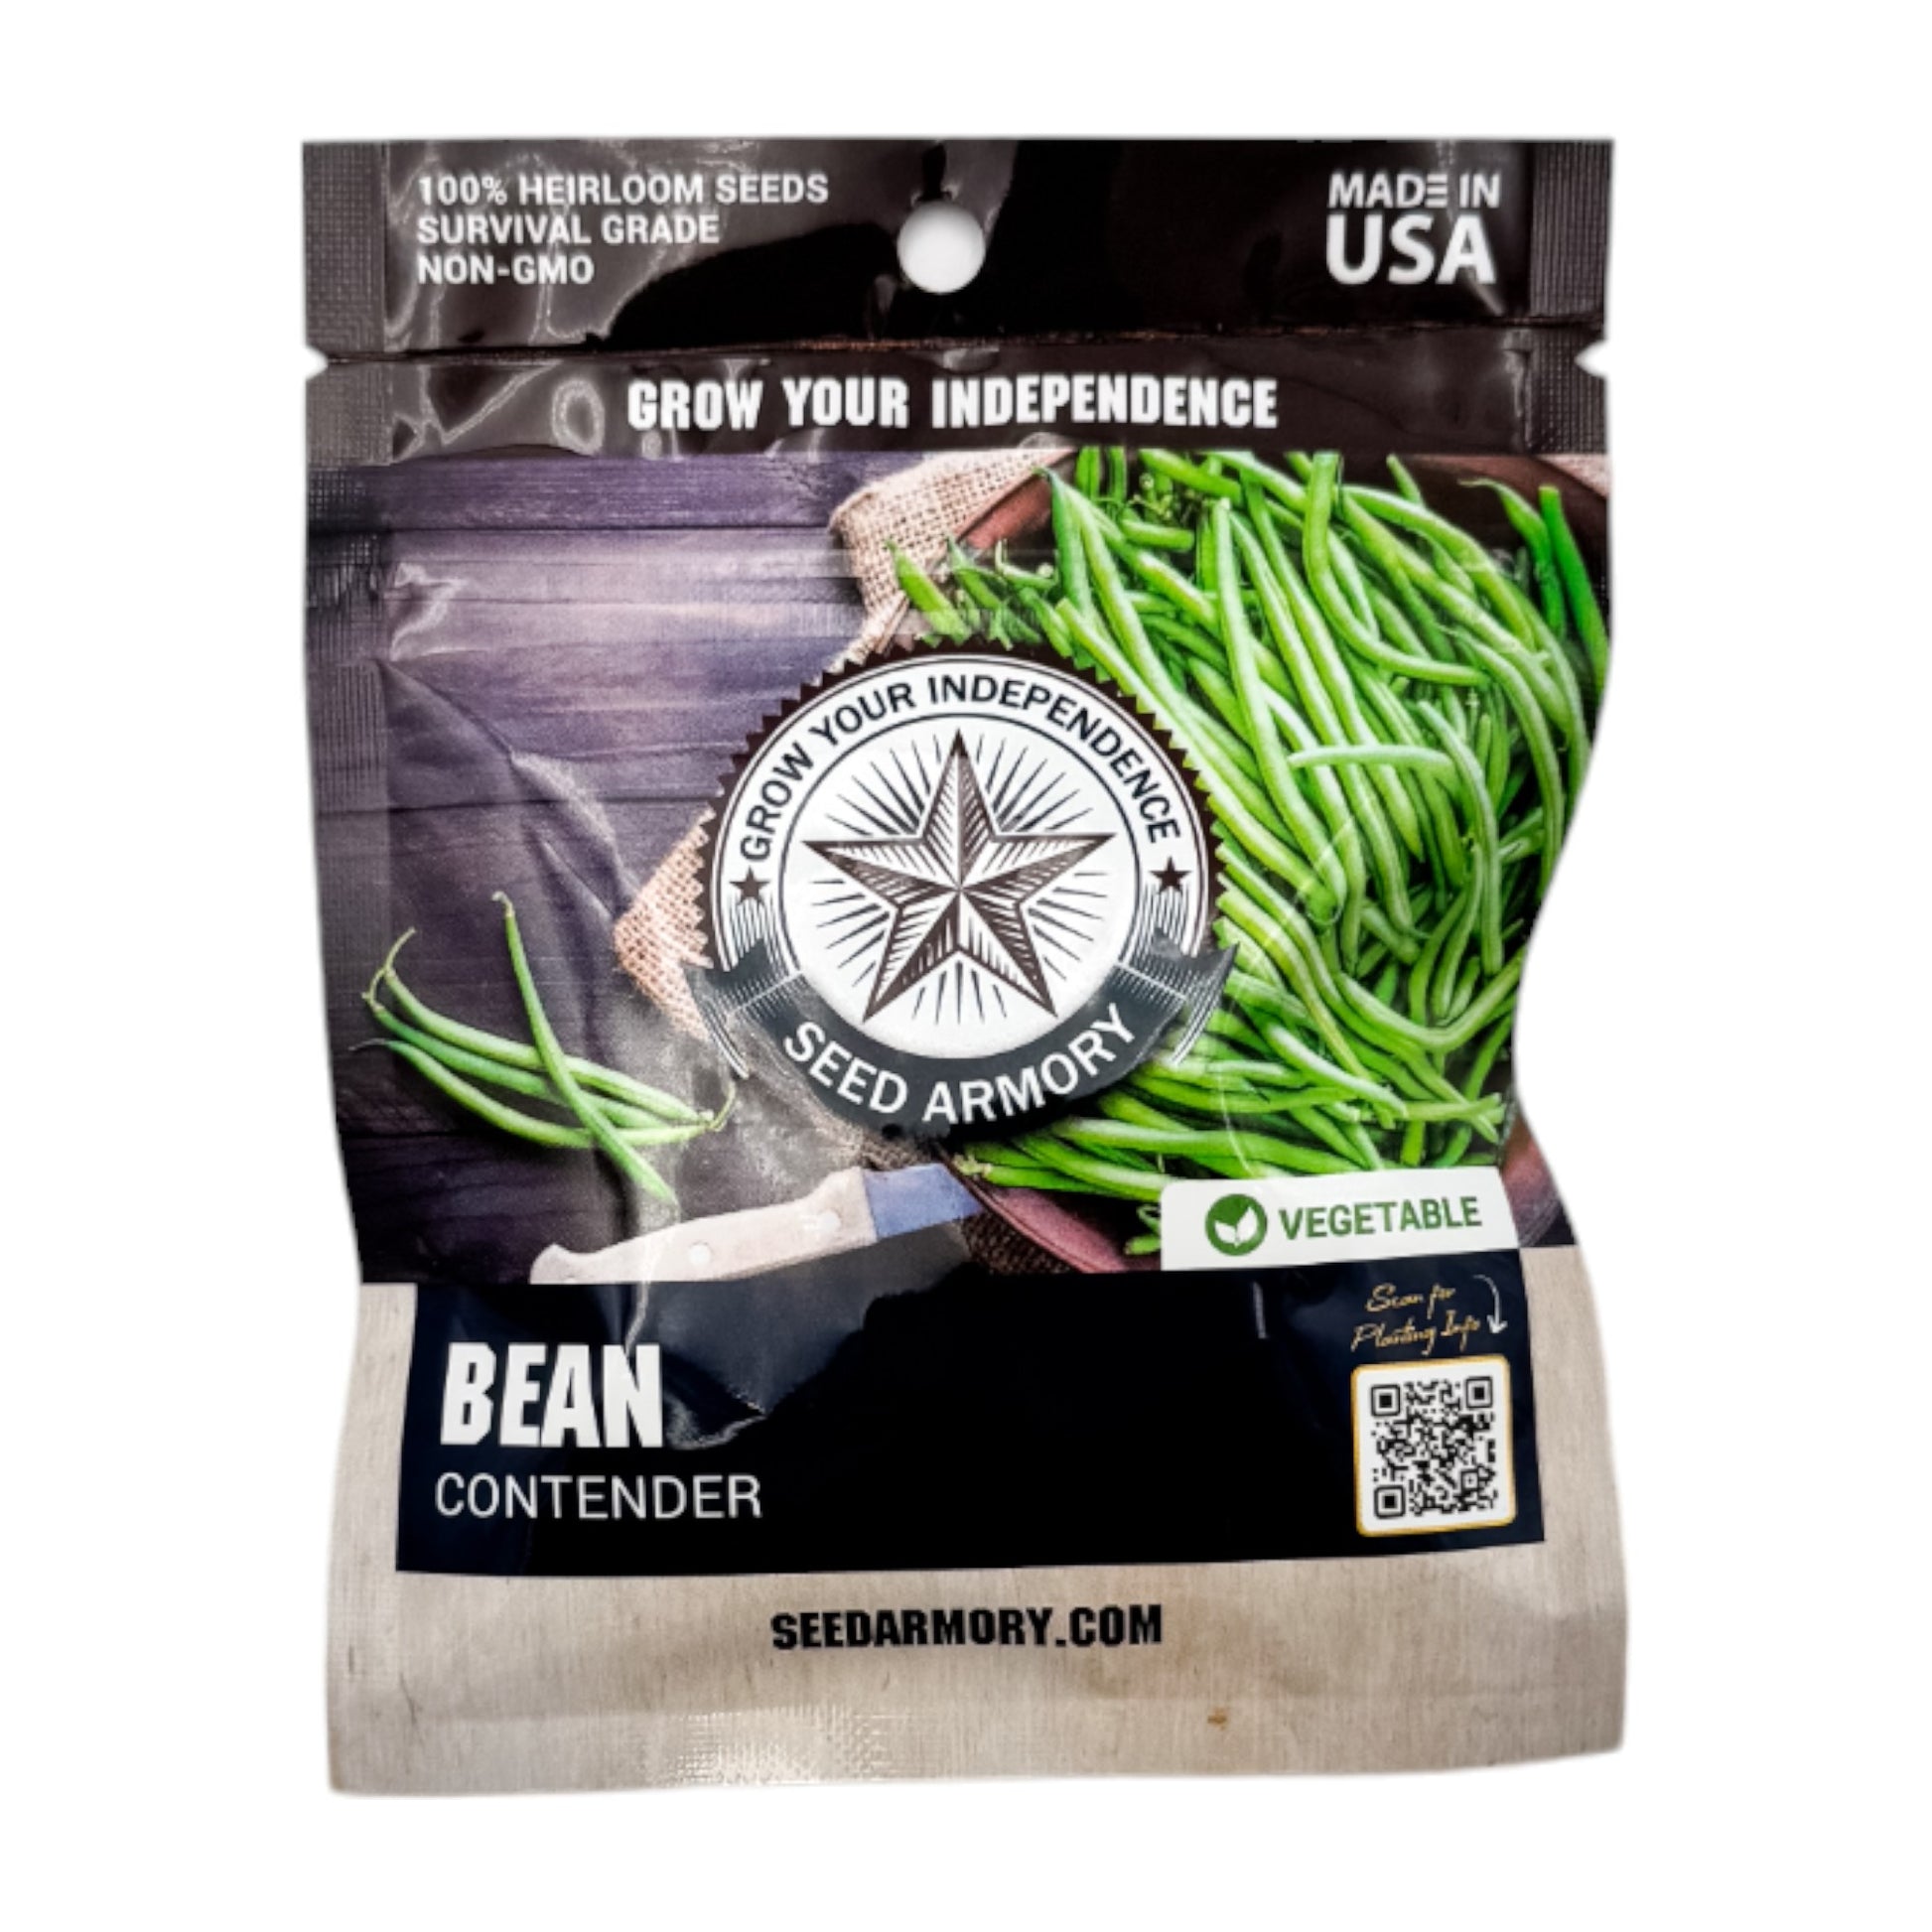 Packet of Contender Heirloom Bean Seeds